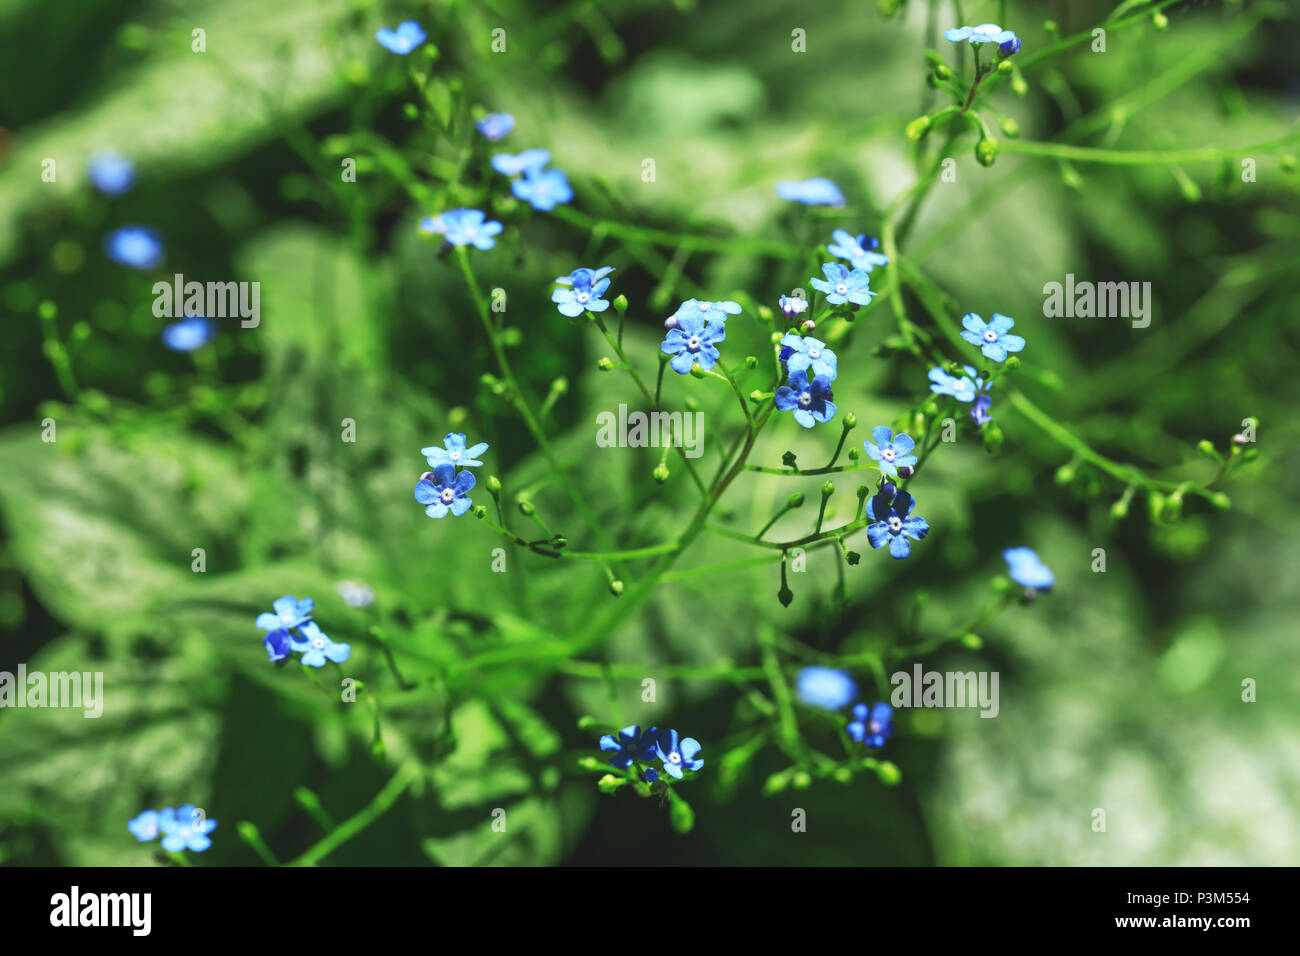 Leuchtend blauen Blüten in blur Stil für natürliche floral background. Natürliche Duft von Frühling oder Sommer fragile Blumen auf grünem Hintergrund. Das beste Bild. Stockfoto